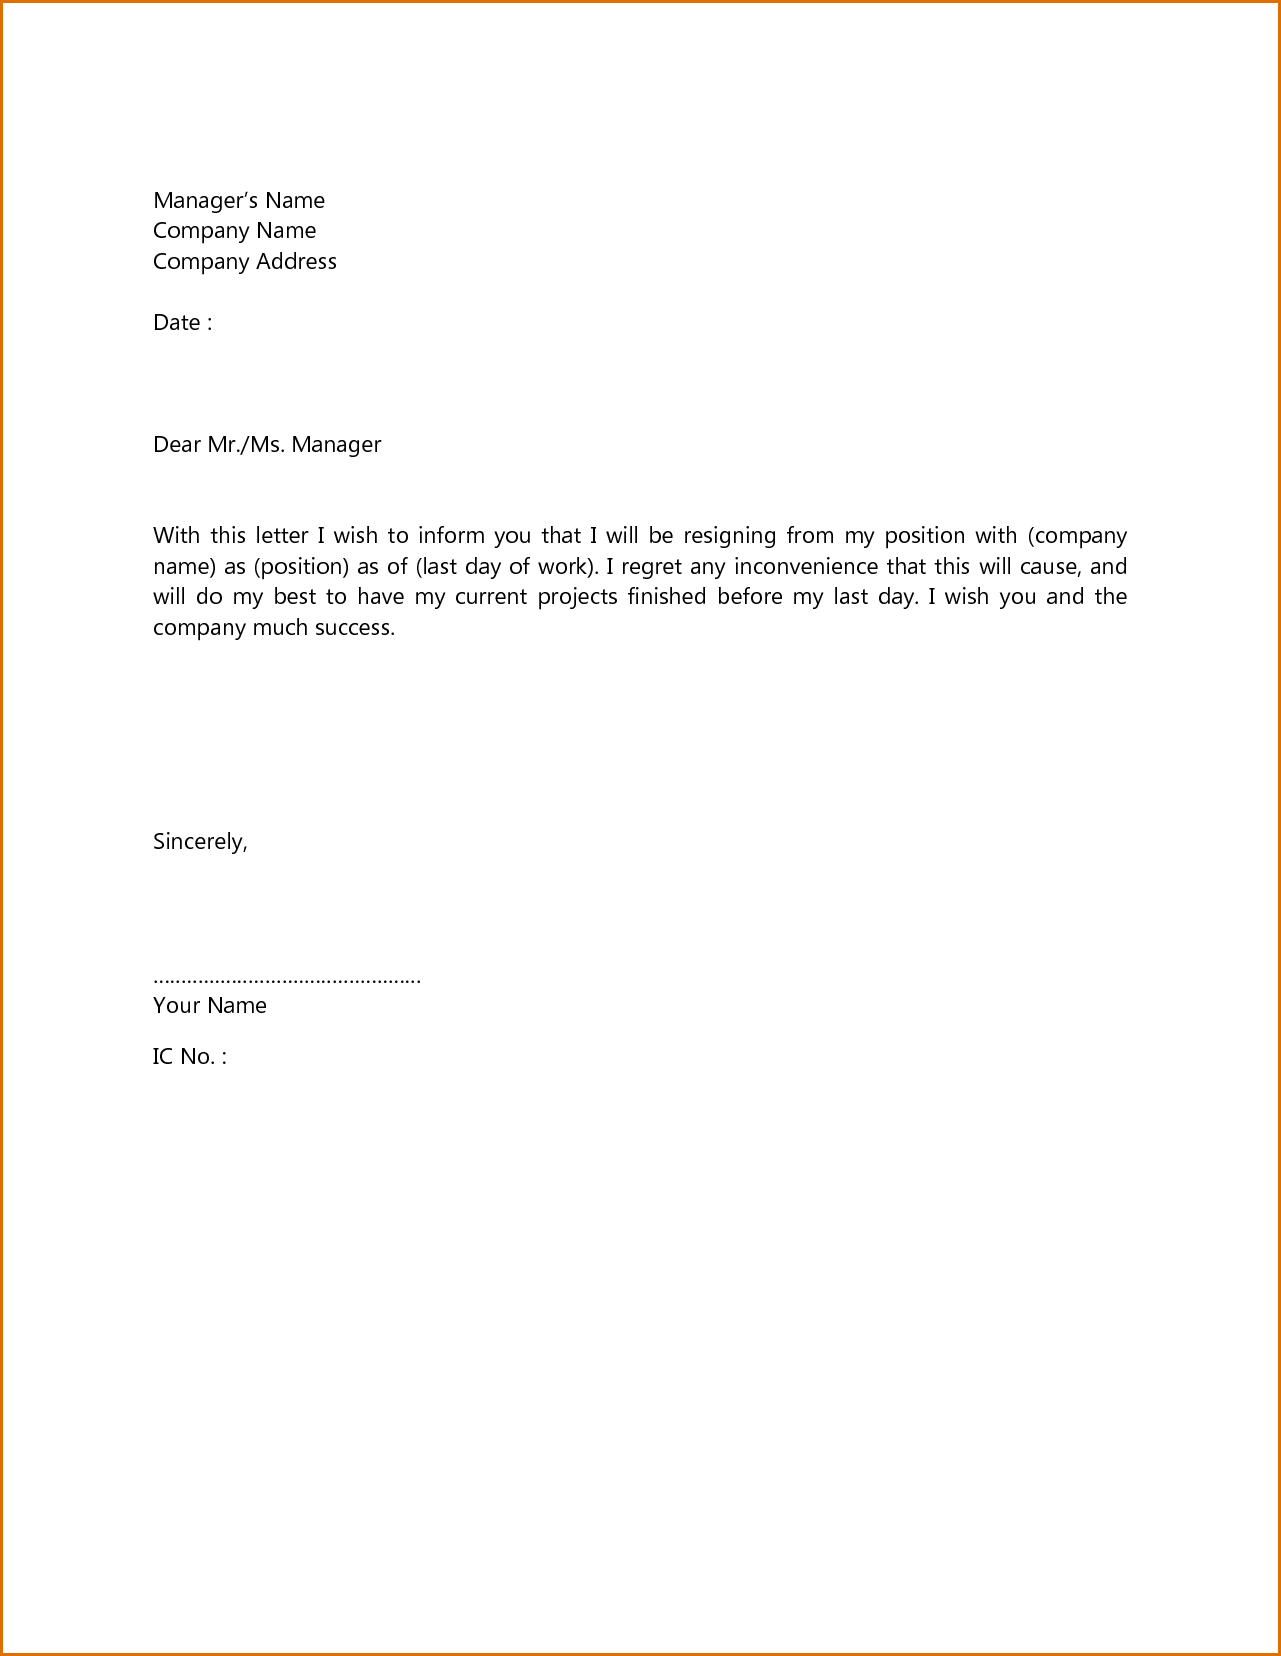 application letter for job resignation